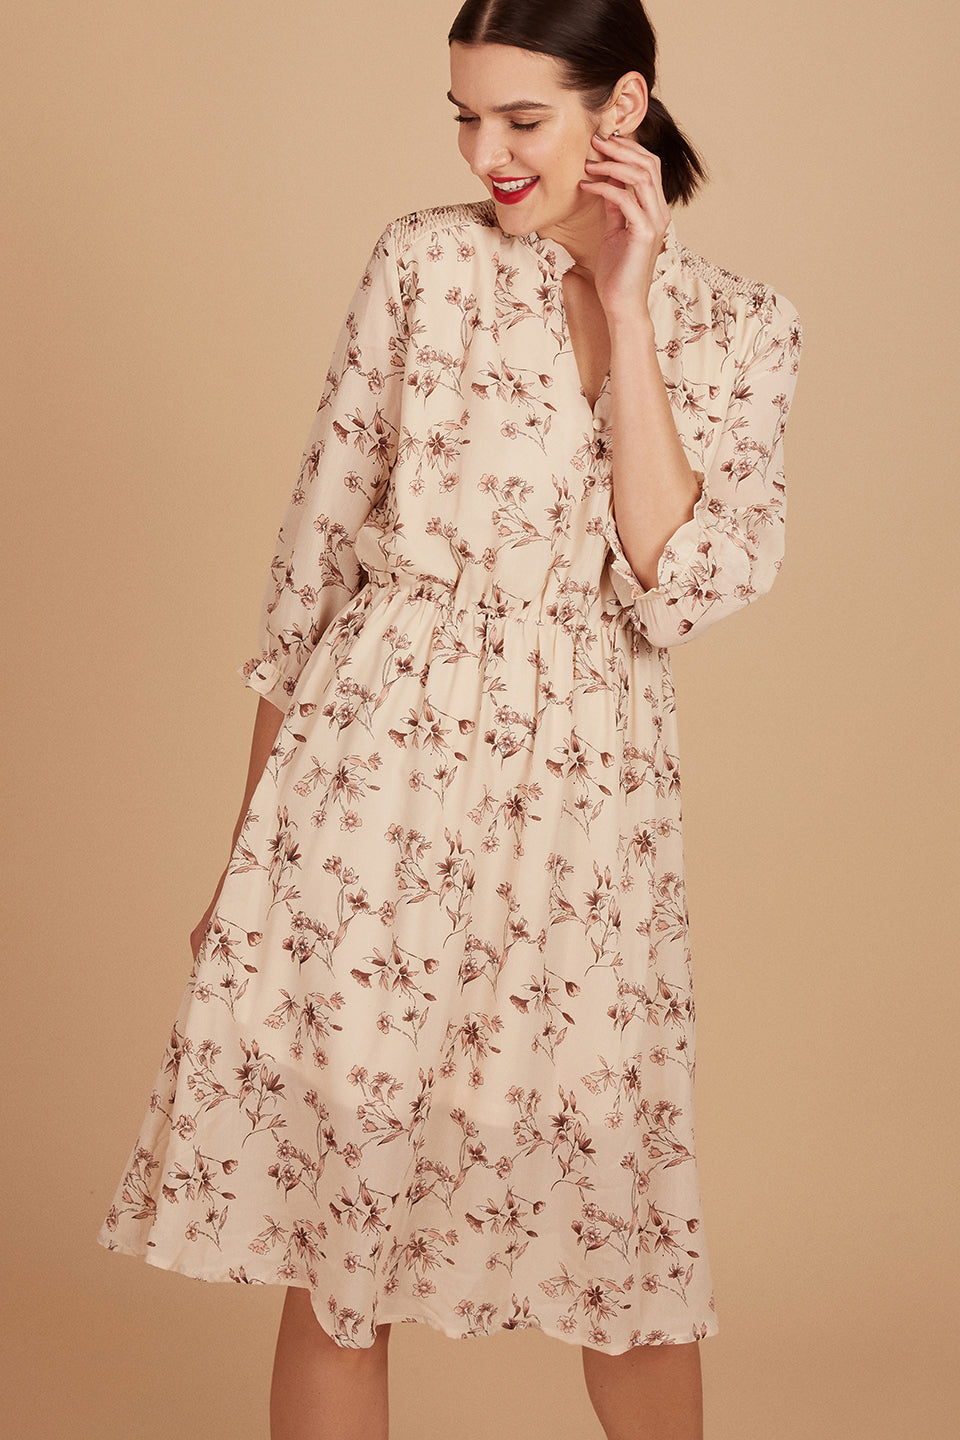 NASTY GAL <br> Floral Print Tea Midi Dress <br> Size L